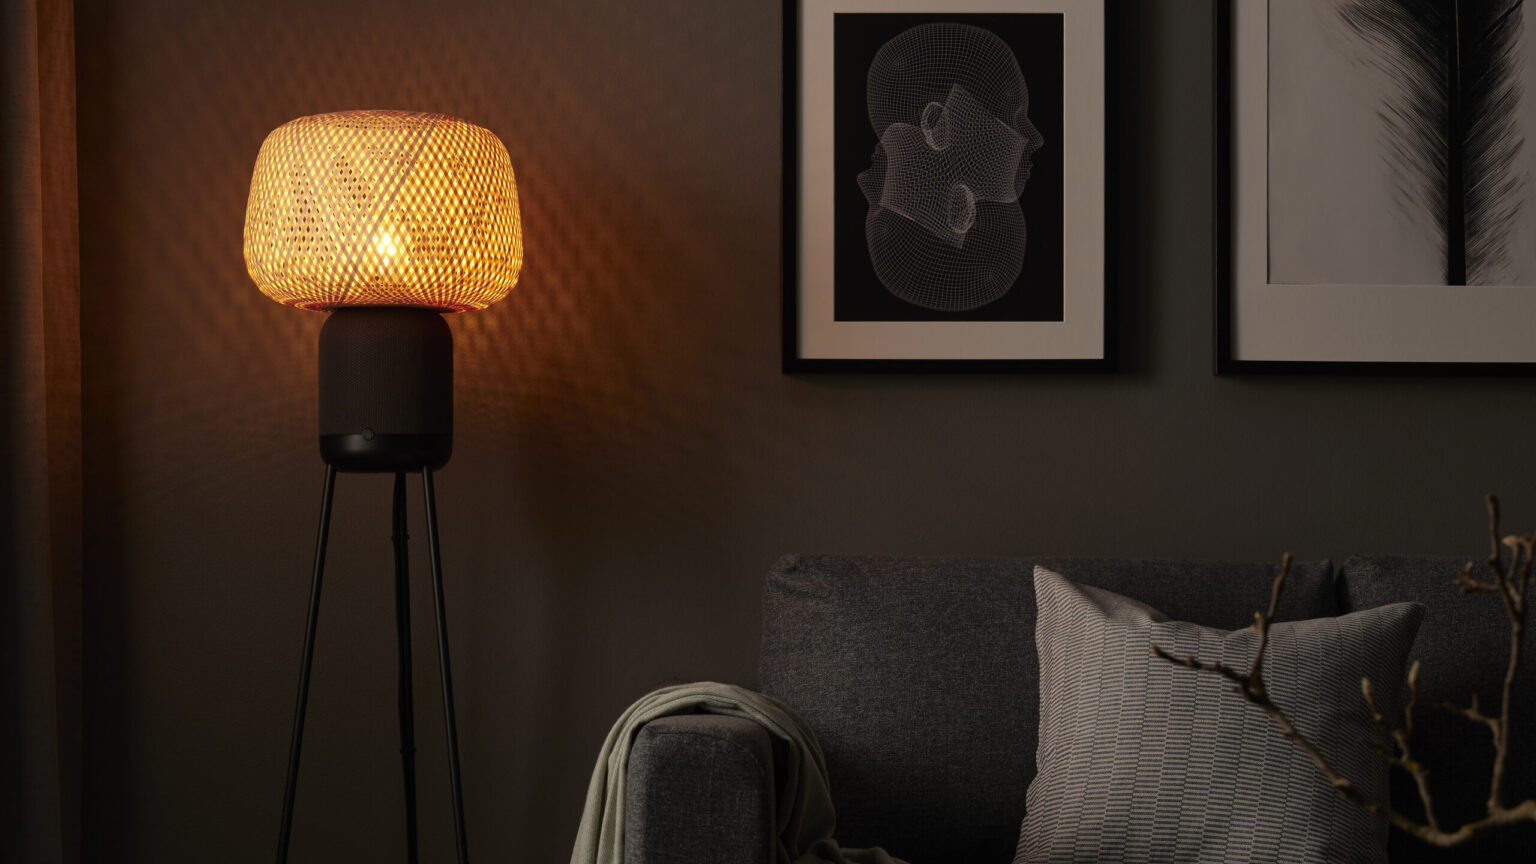 SYMFONISK: IKEA och Sonos lanserar ny golvlampehögtalare